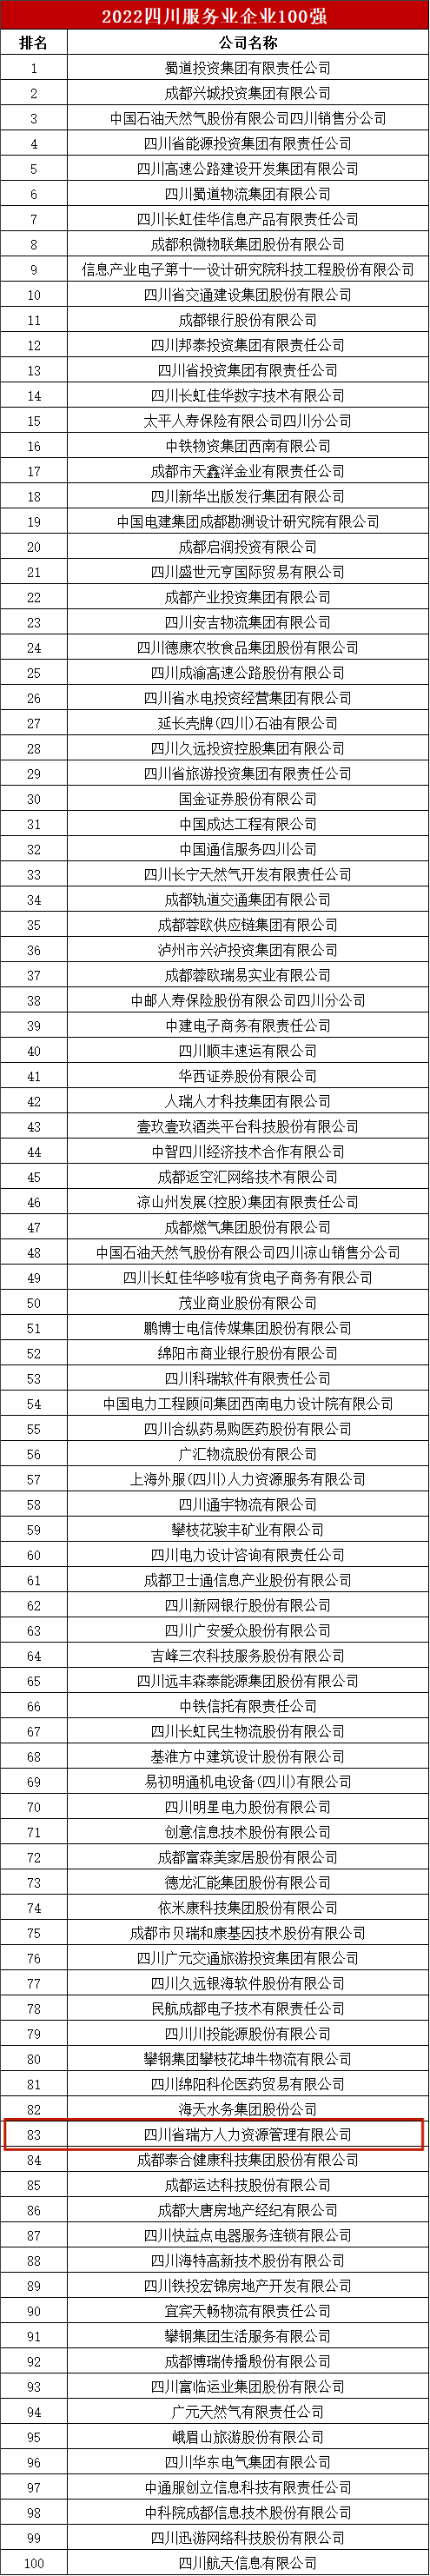 瑞方人力上榜2022年四川服务业企业100强 第5张